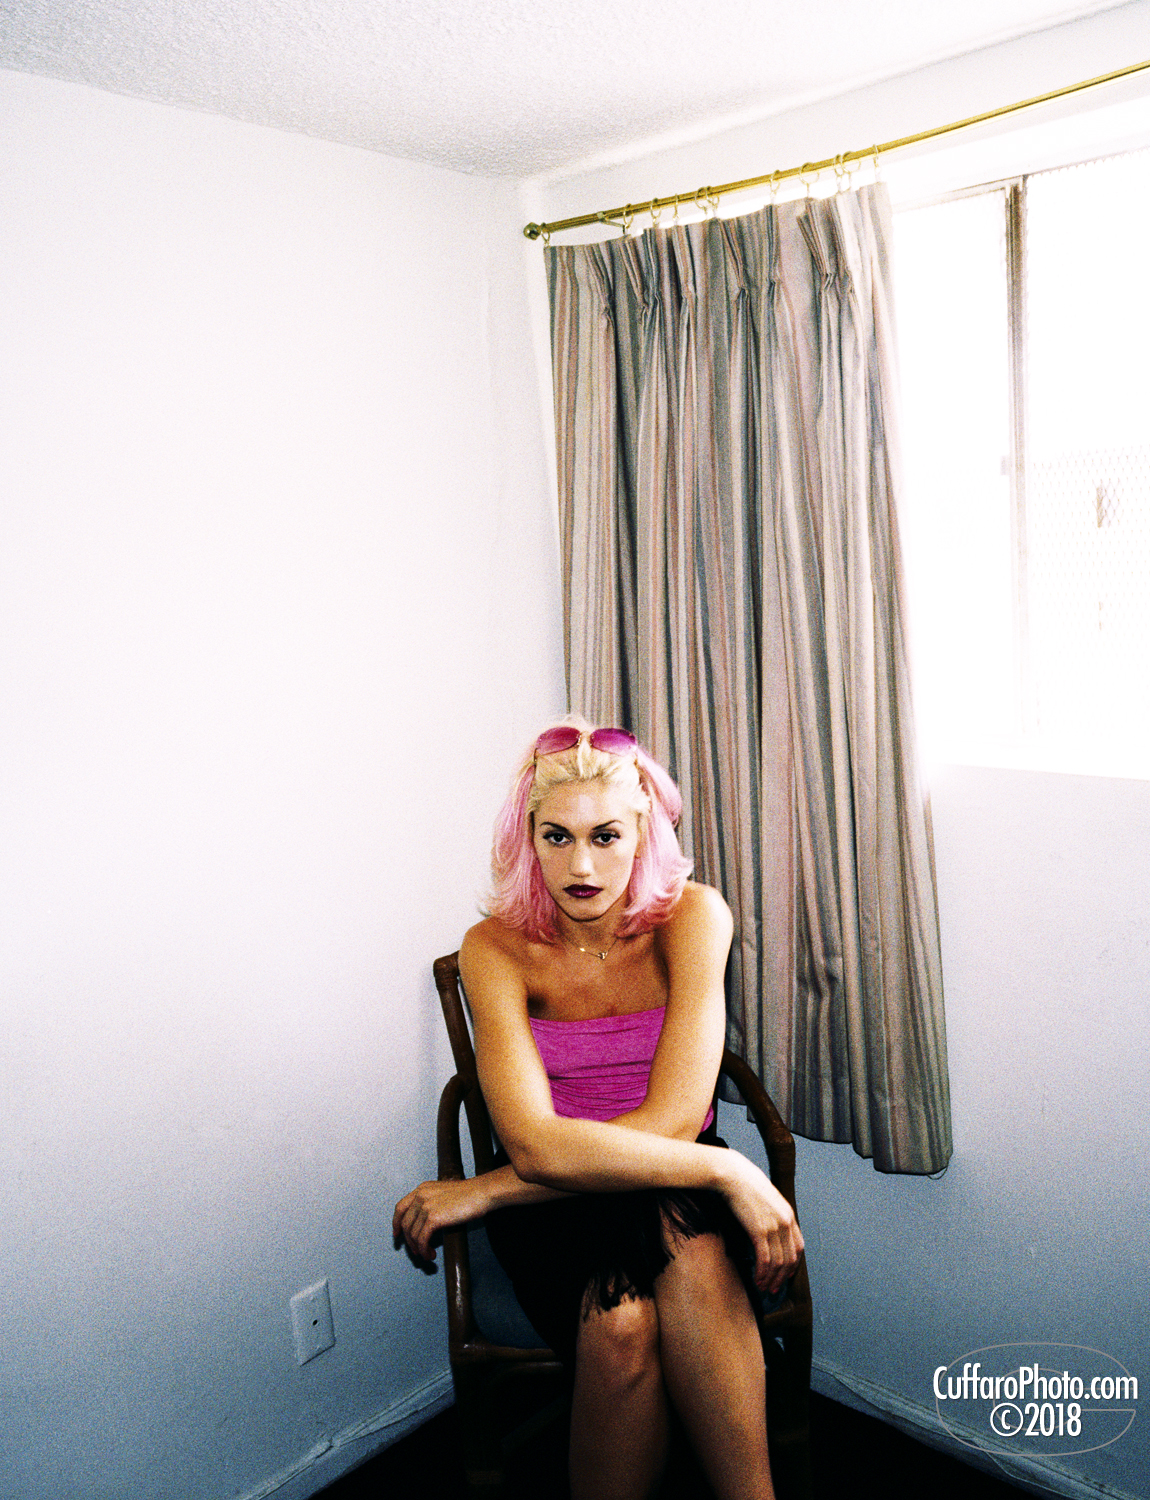 Gwen Stefani 1999 – CuffaroPhoto